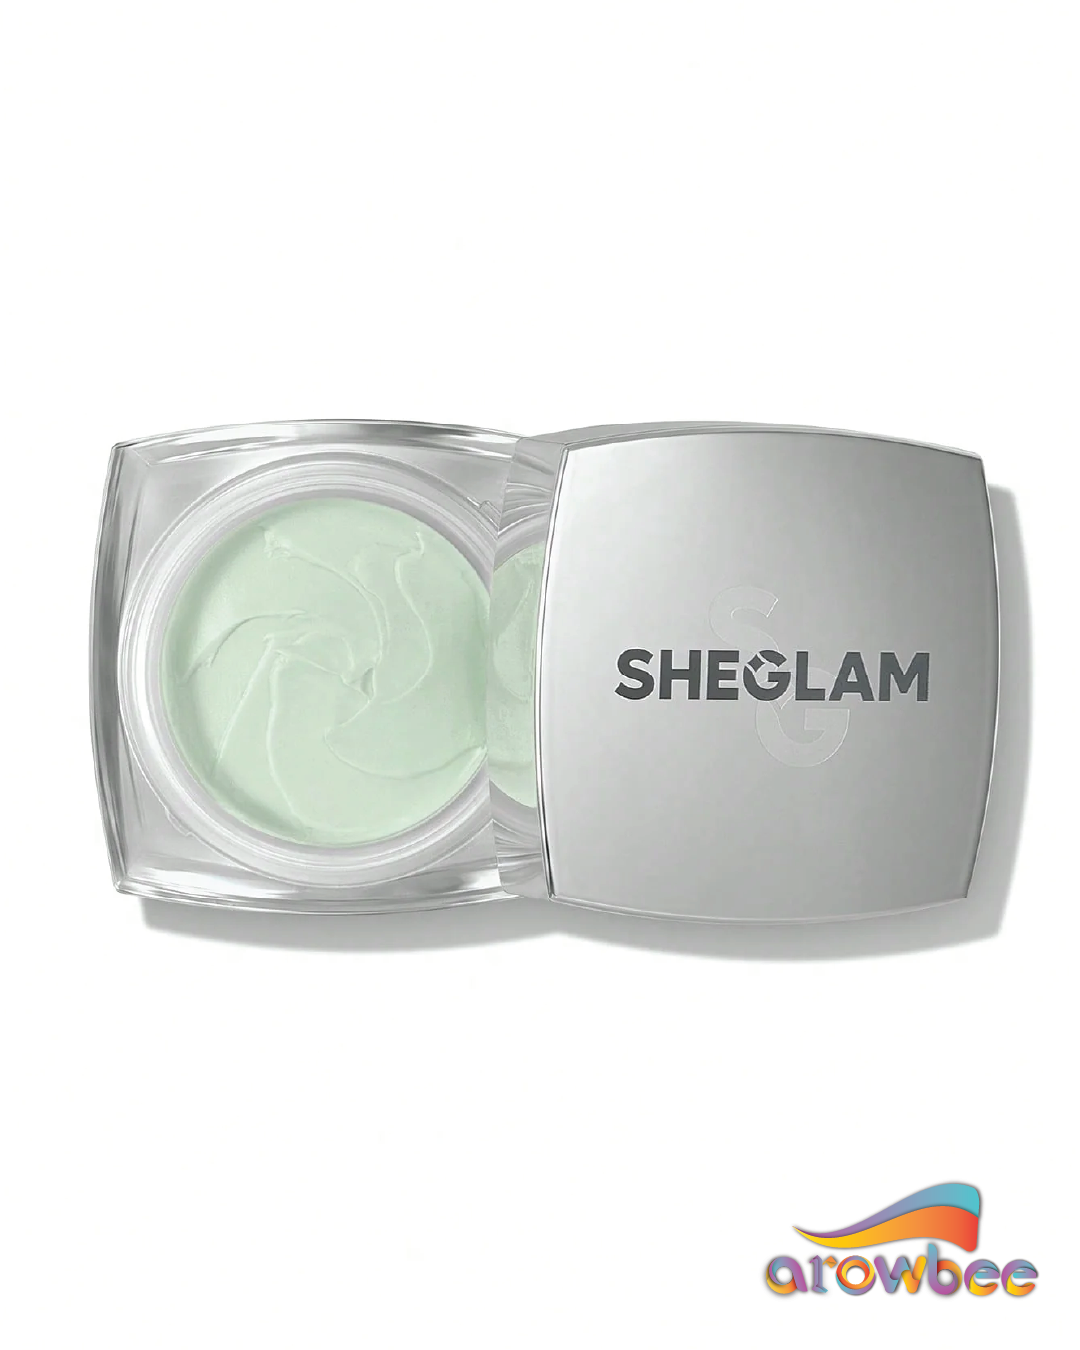 SHEGLAM Birthday Skin Primer For All Types Of Skin